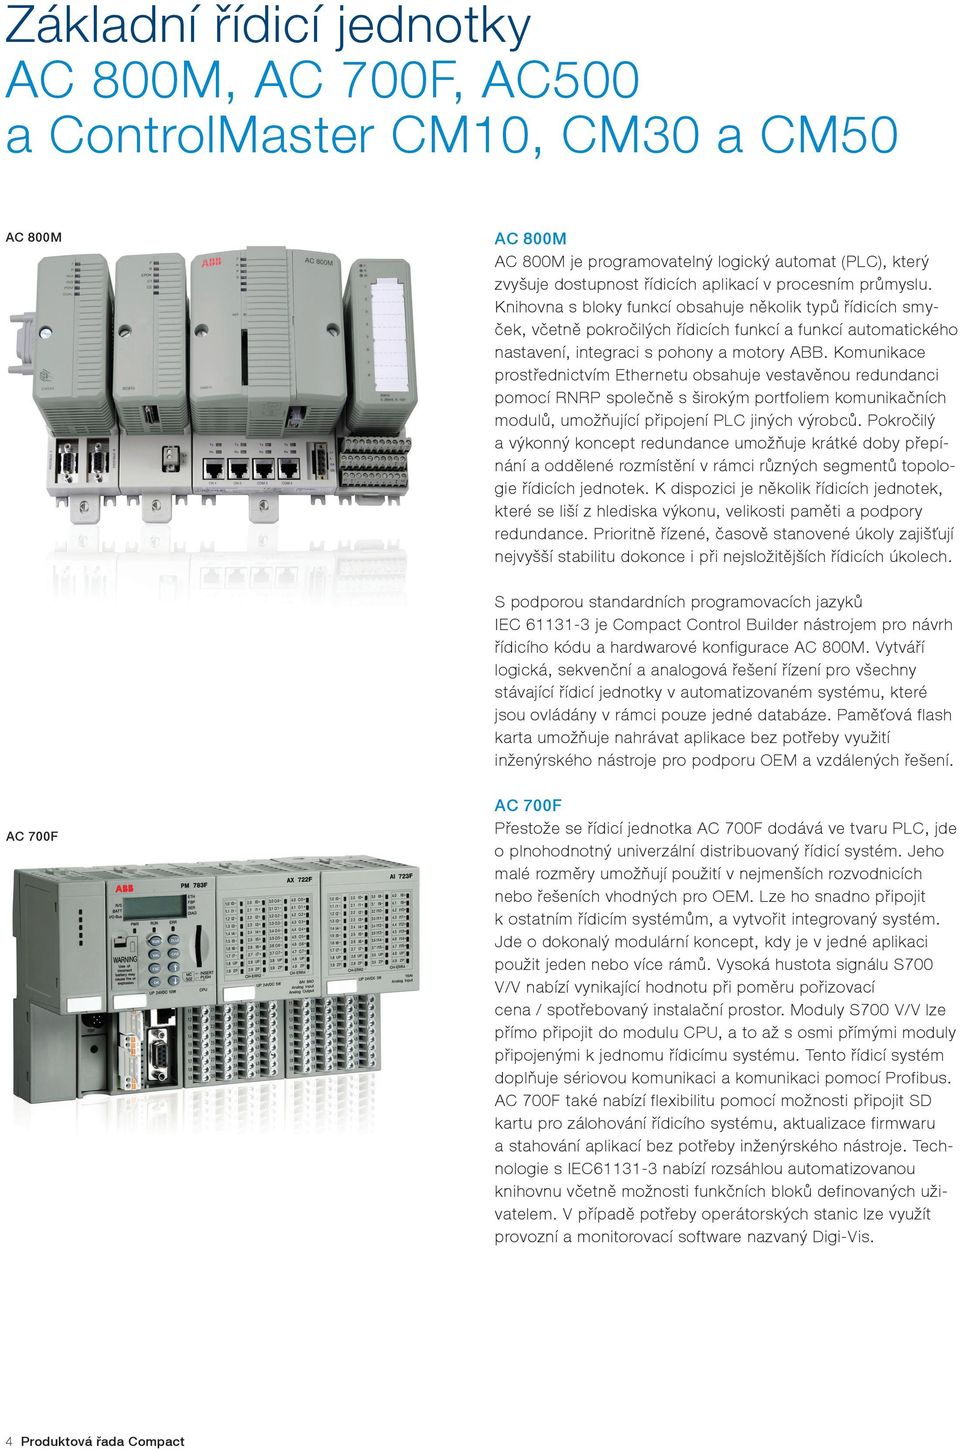 Komunikace prostřednictvím Ethernetu obsahuje vestavěnou redundanci pomocí RNRP společně s širokým portfoliem komunikačních modulů, umožňující připojení PLC jiných výrobců.